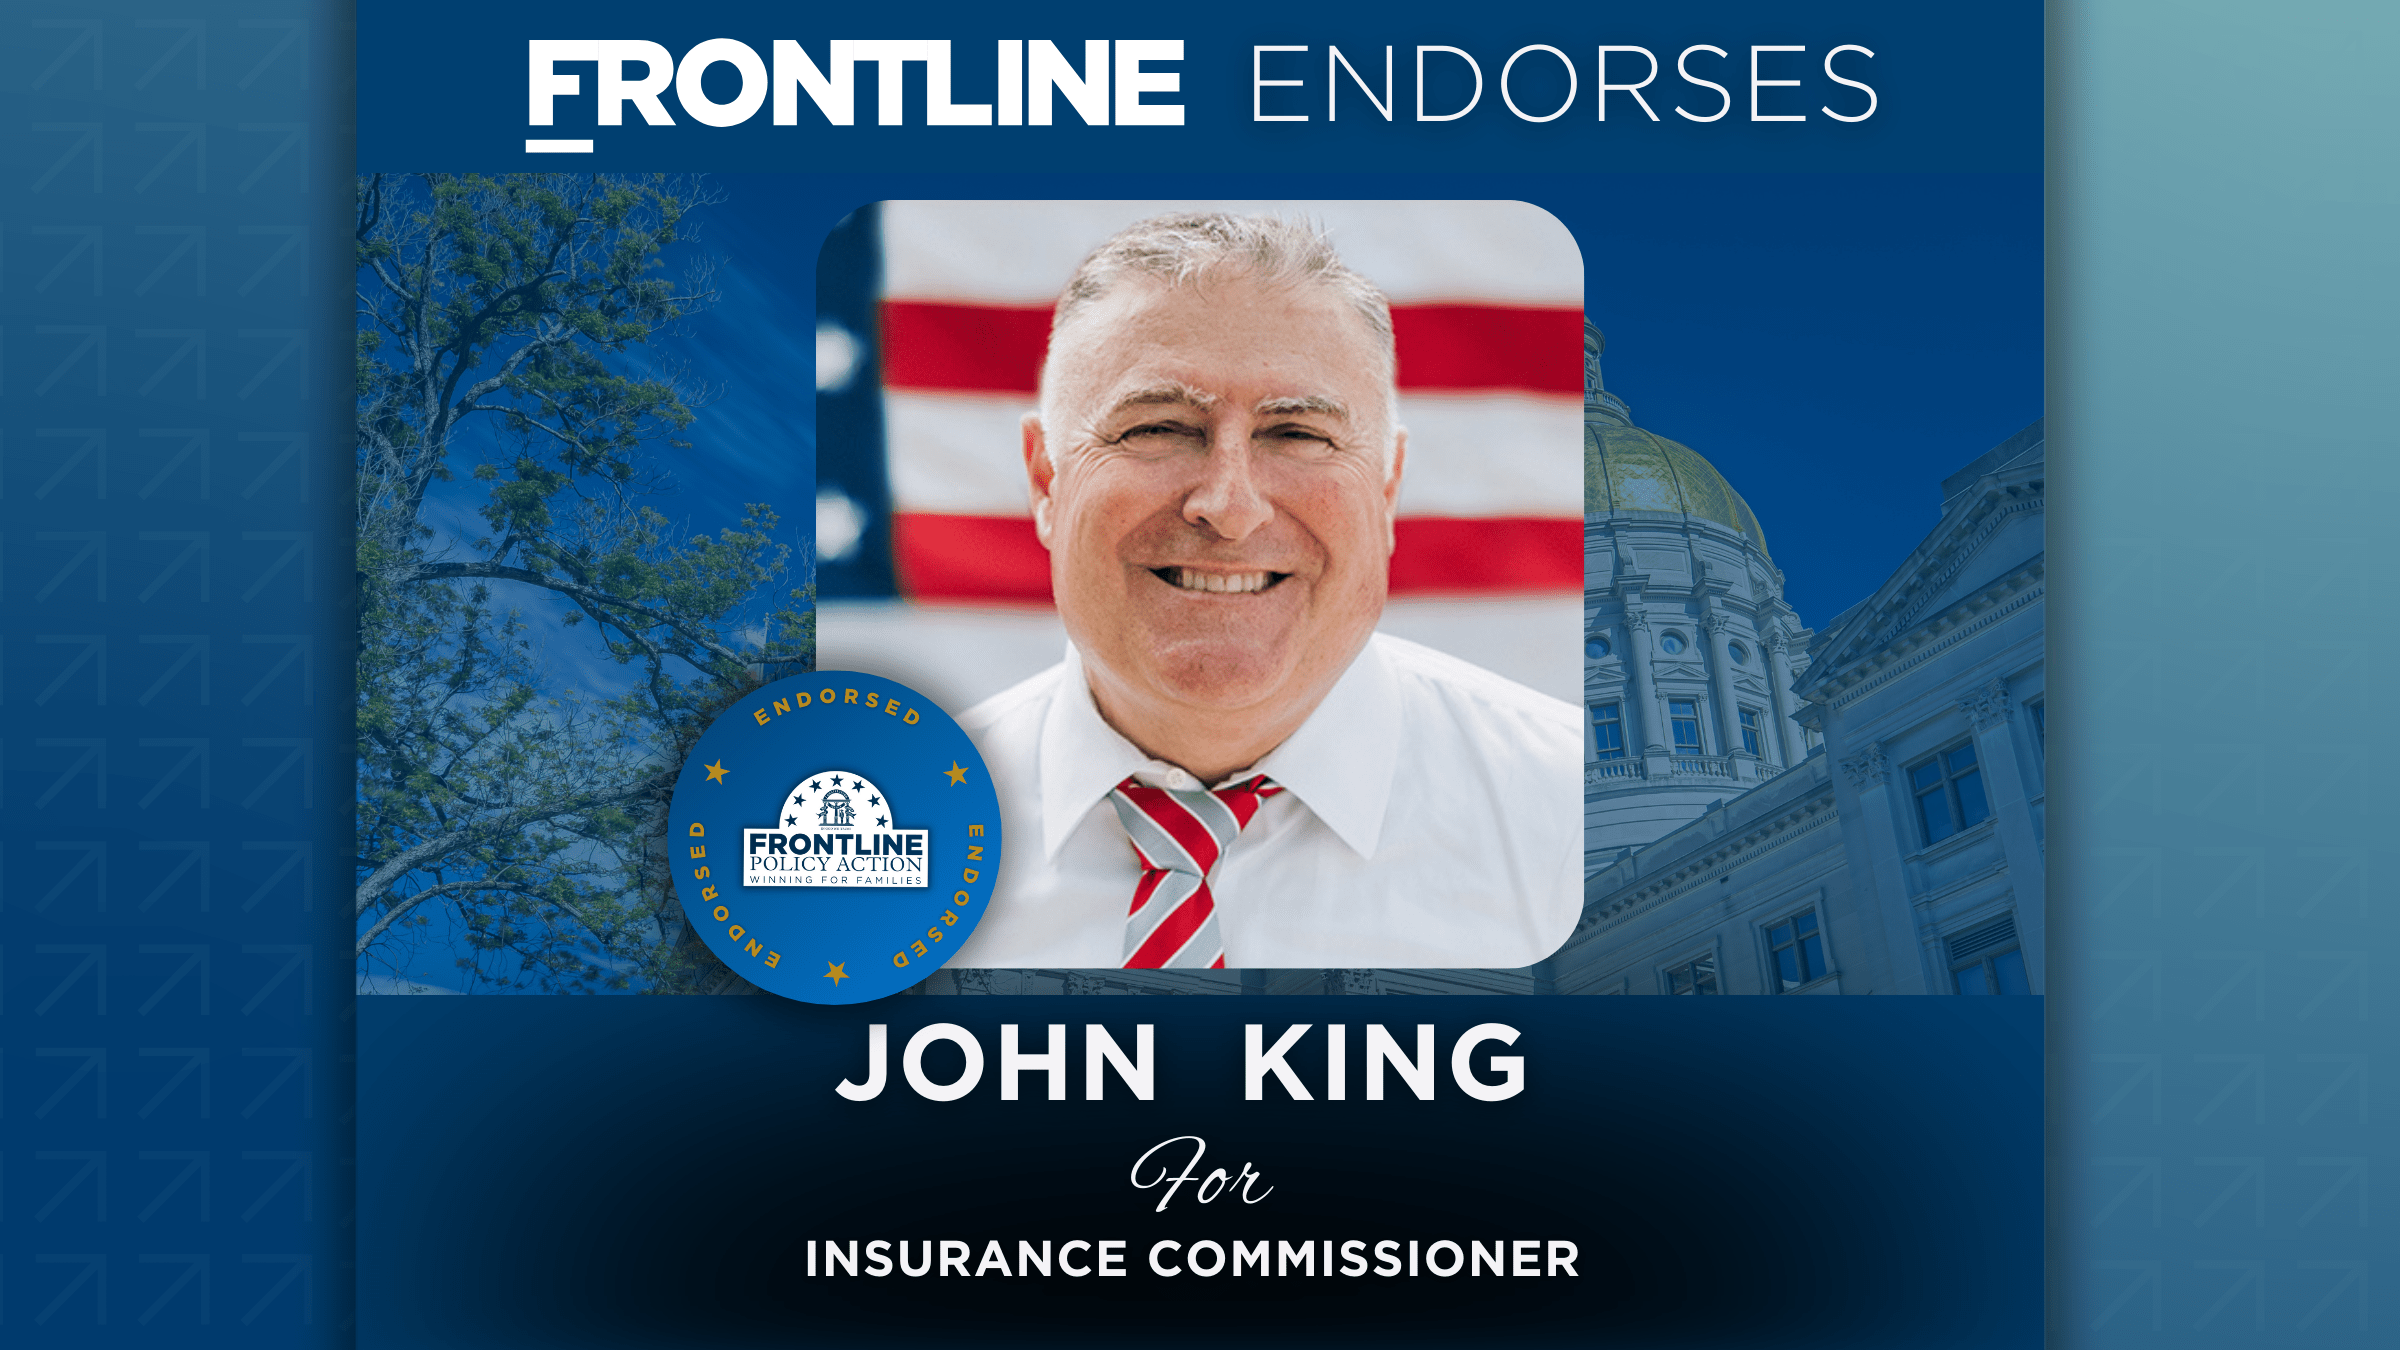 BREAKING: Frontline Endorses John King for Insurance Commissioner